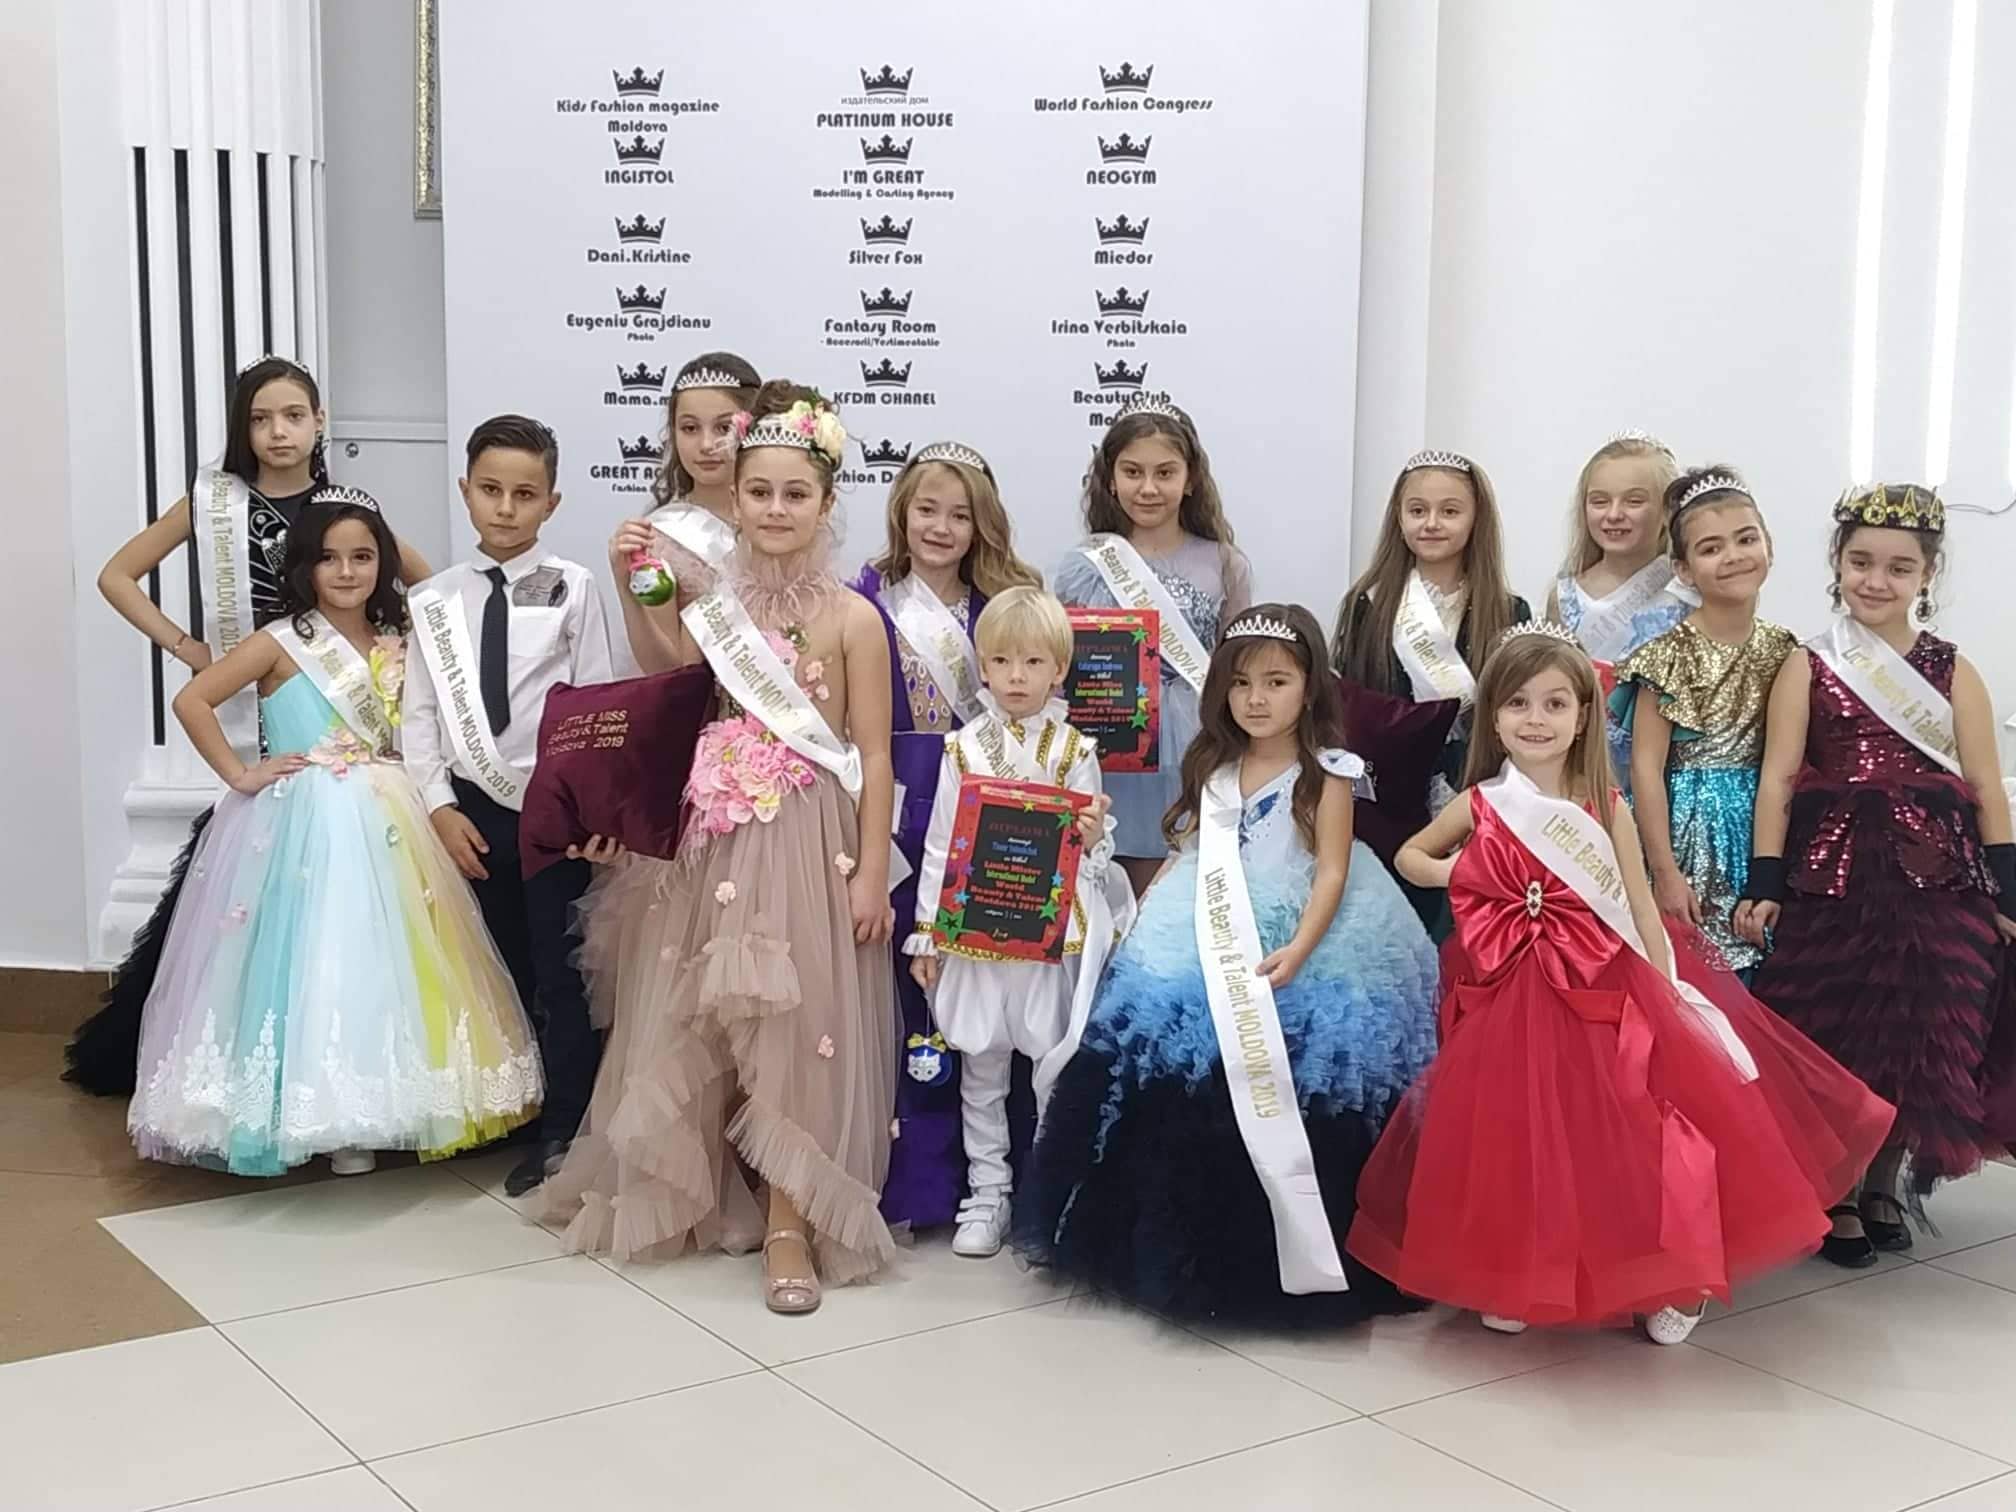 Little MissMister World Beauty & Talent Moldova 2019